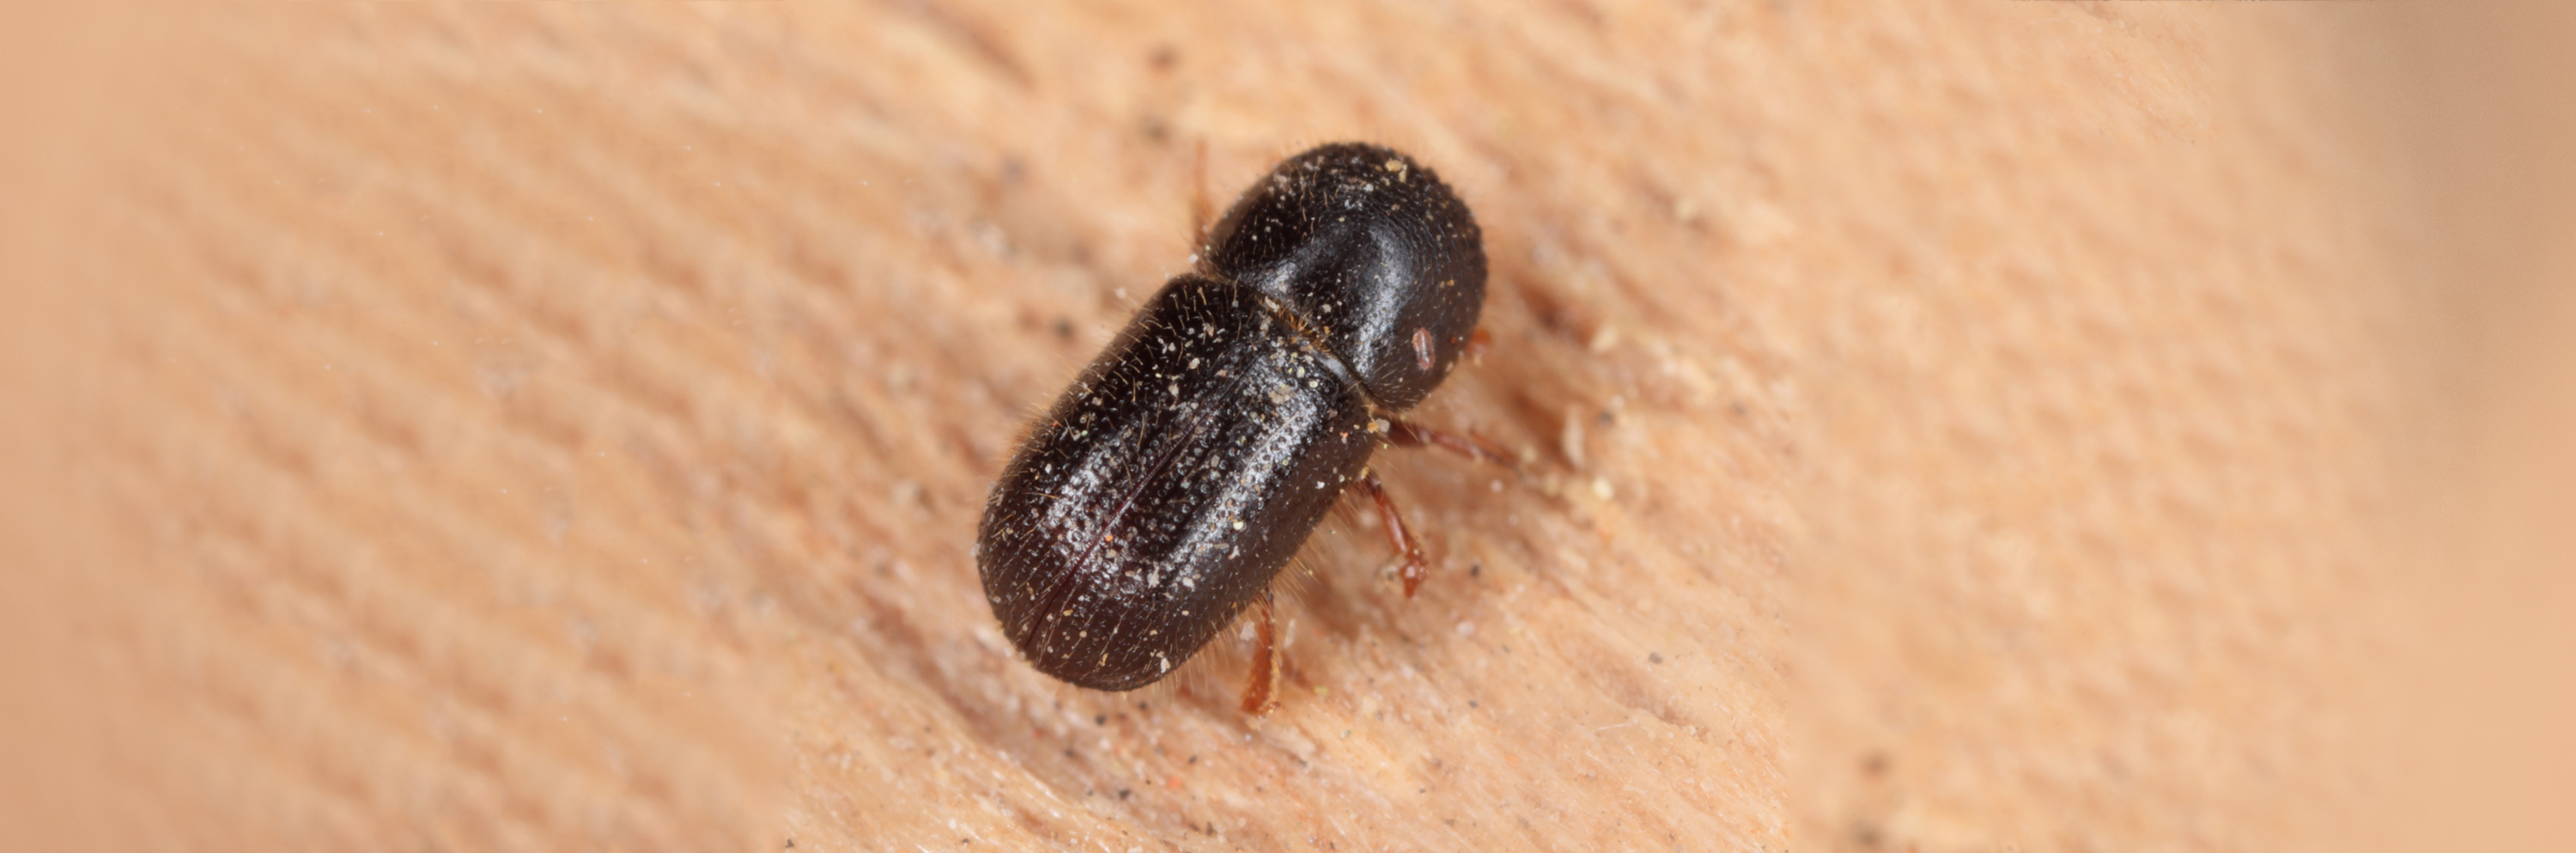 Xyleborus dispar (pear blight beetle) - ambrosia beetle